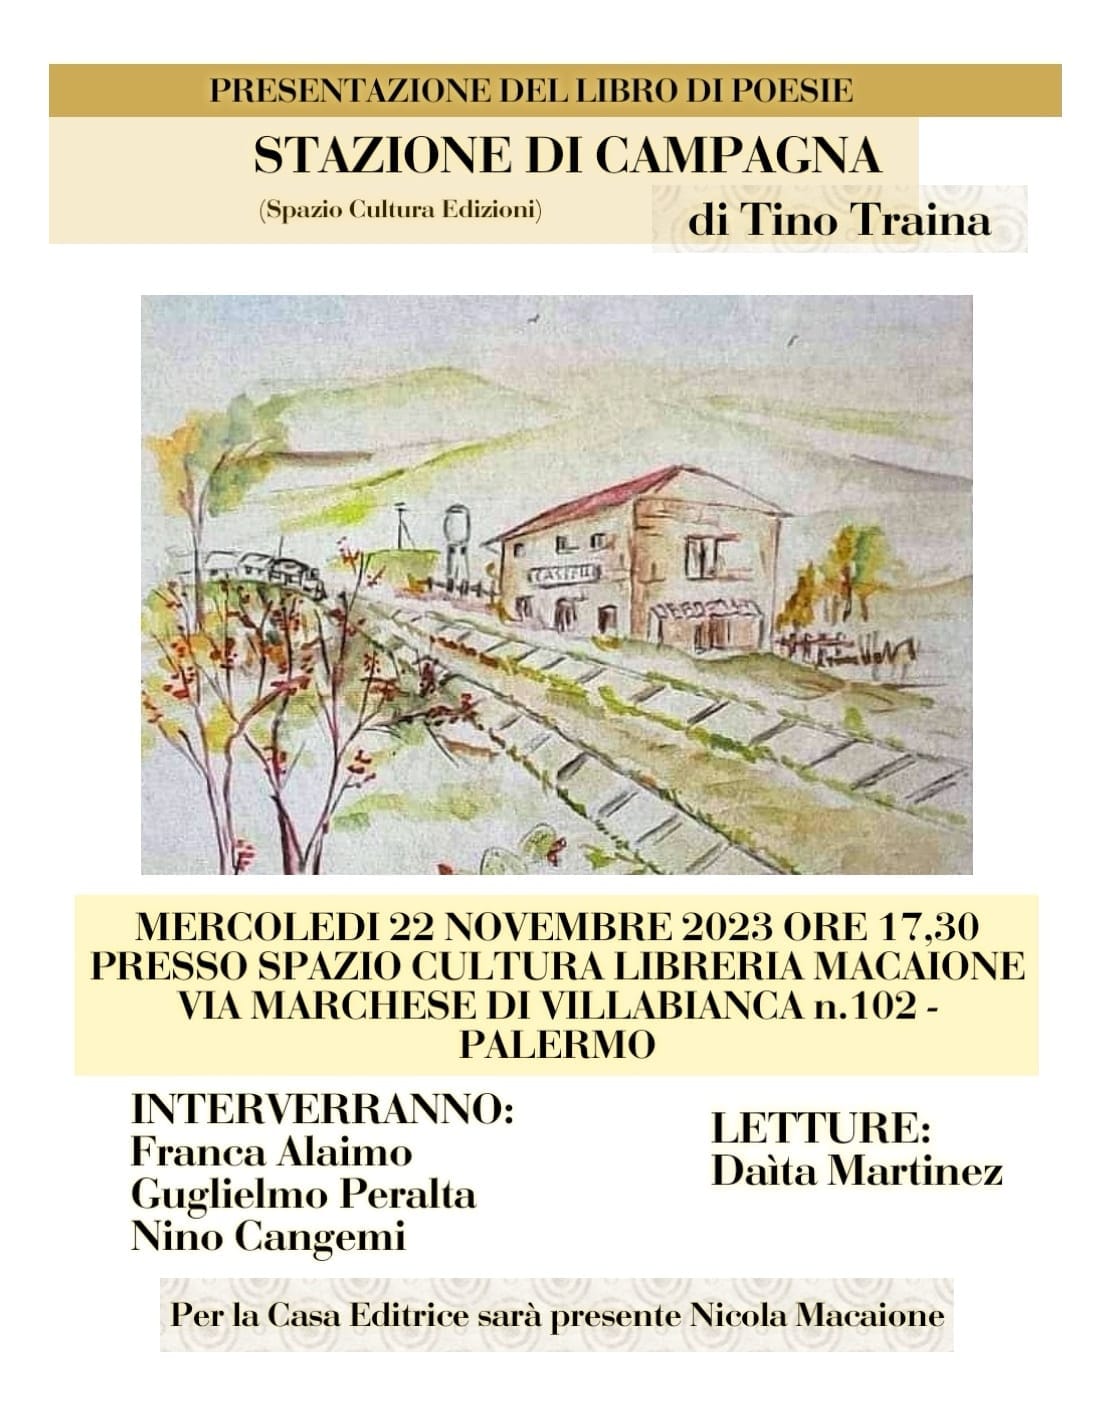 Presentazione a Palermo del libro di poesie “Stazione di Campagna” di Tino Traina